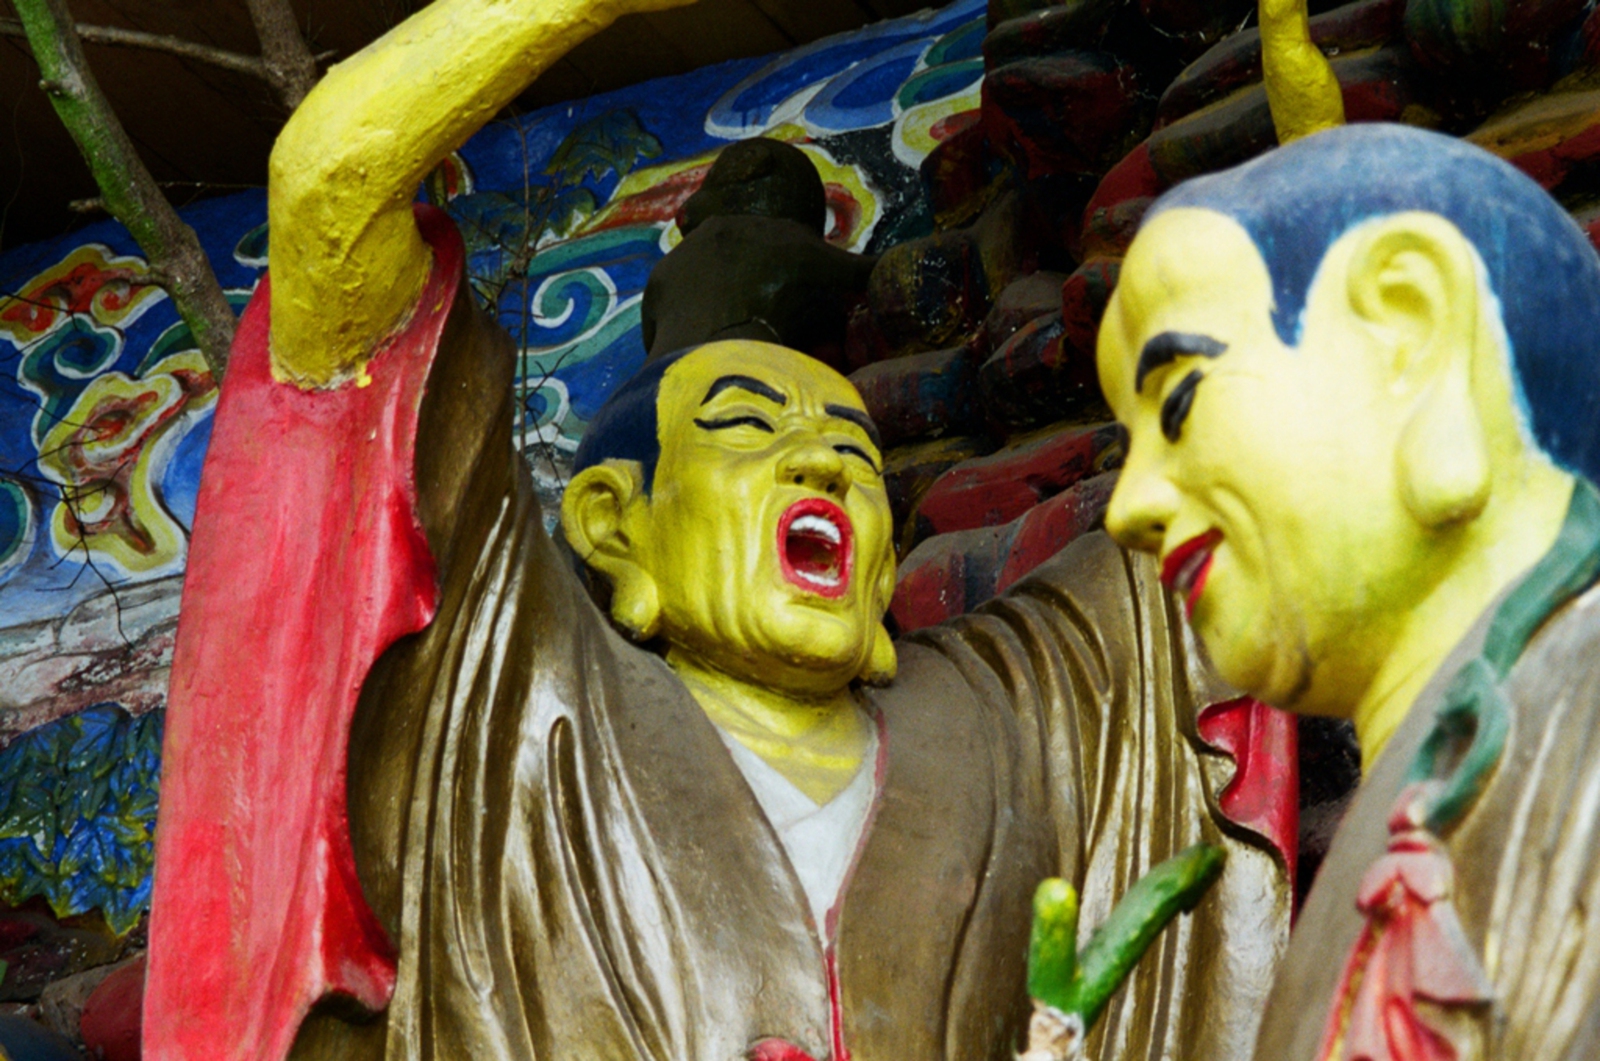 Qingchengshan: Beelden bij de tempel